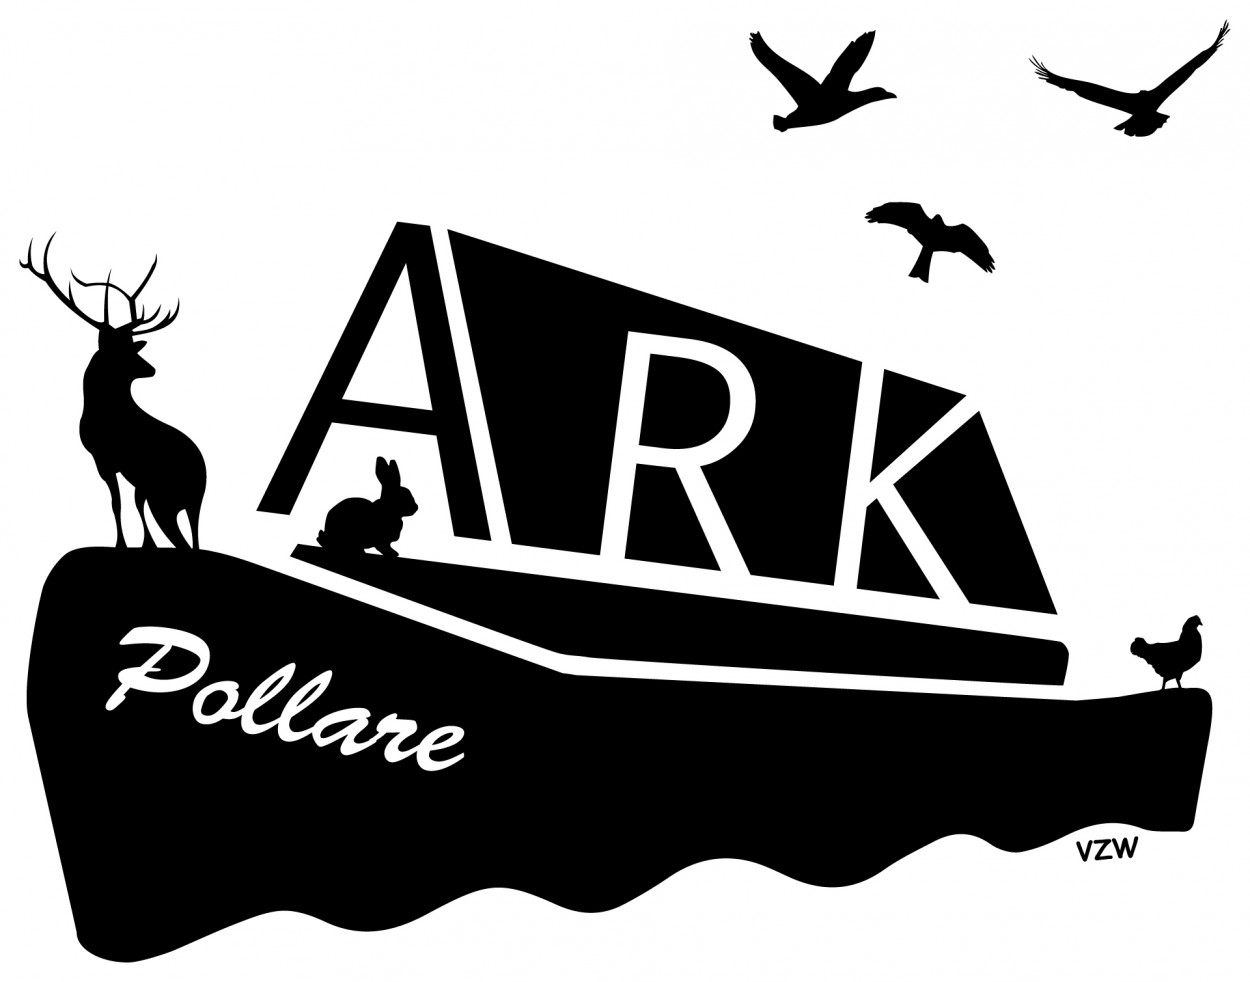 De Ark van Pollare vzw